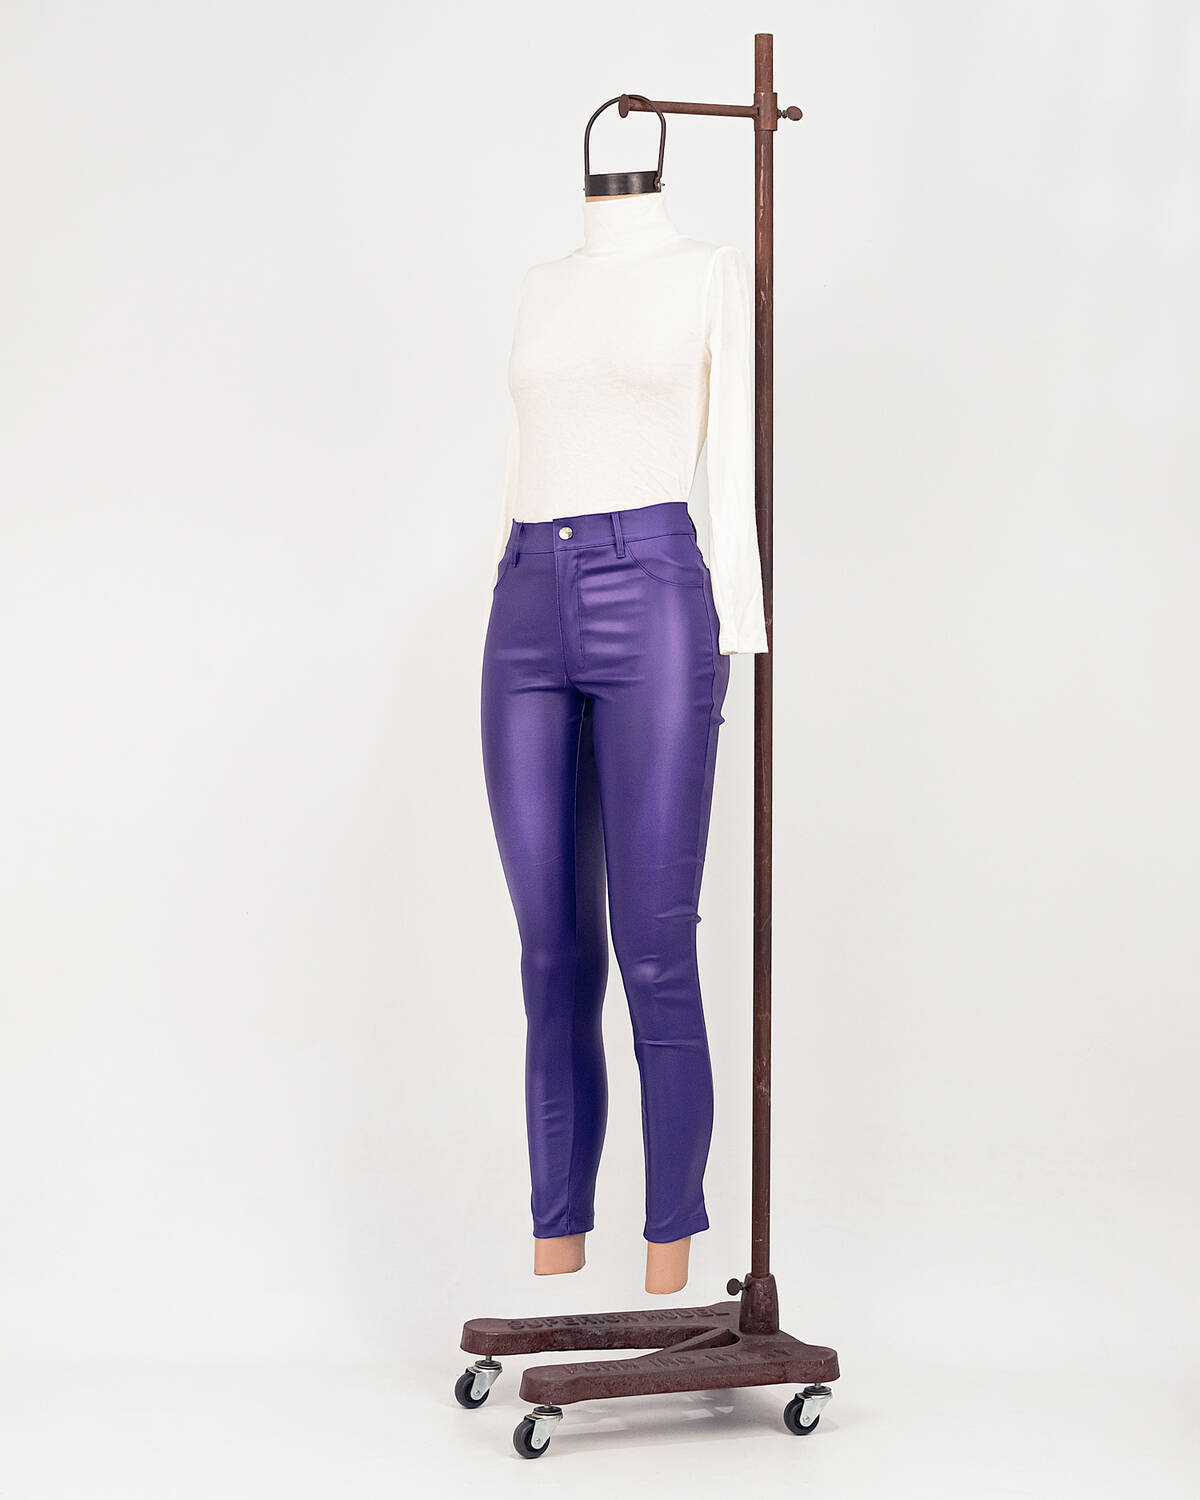 Imagen producto Pantalon Engomado violeta 5